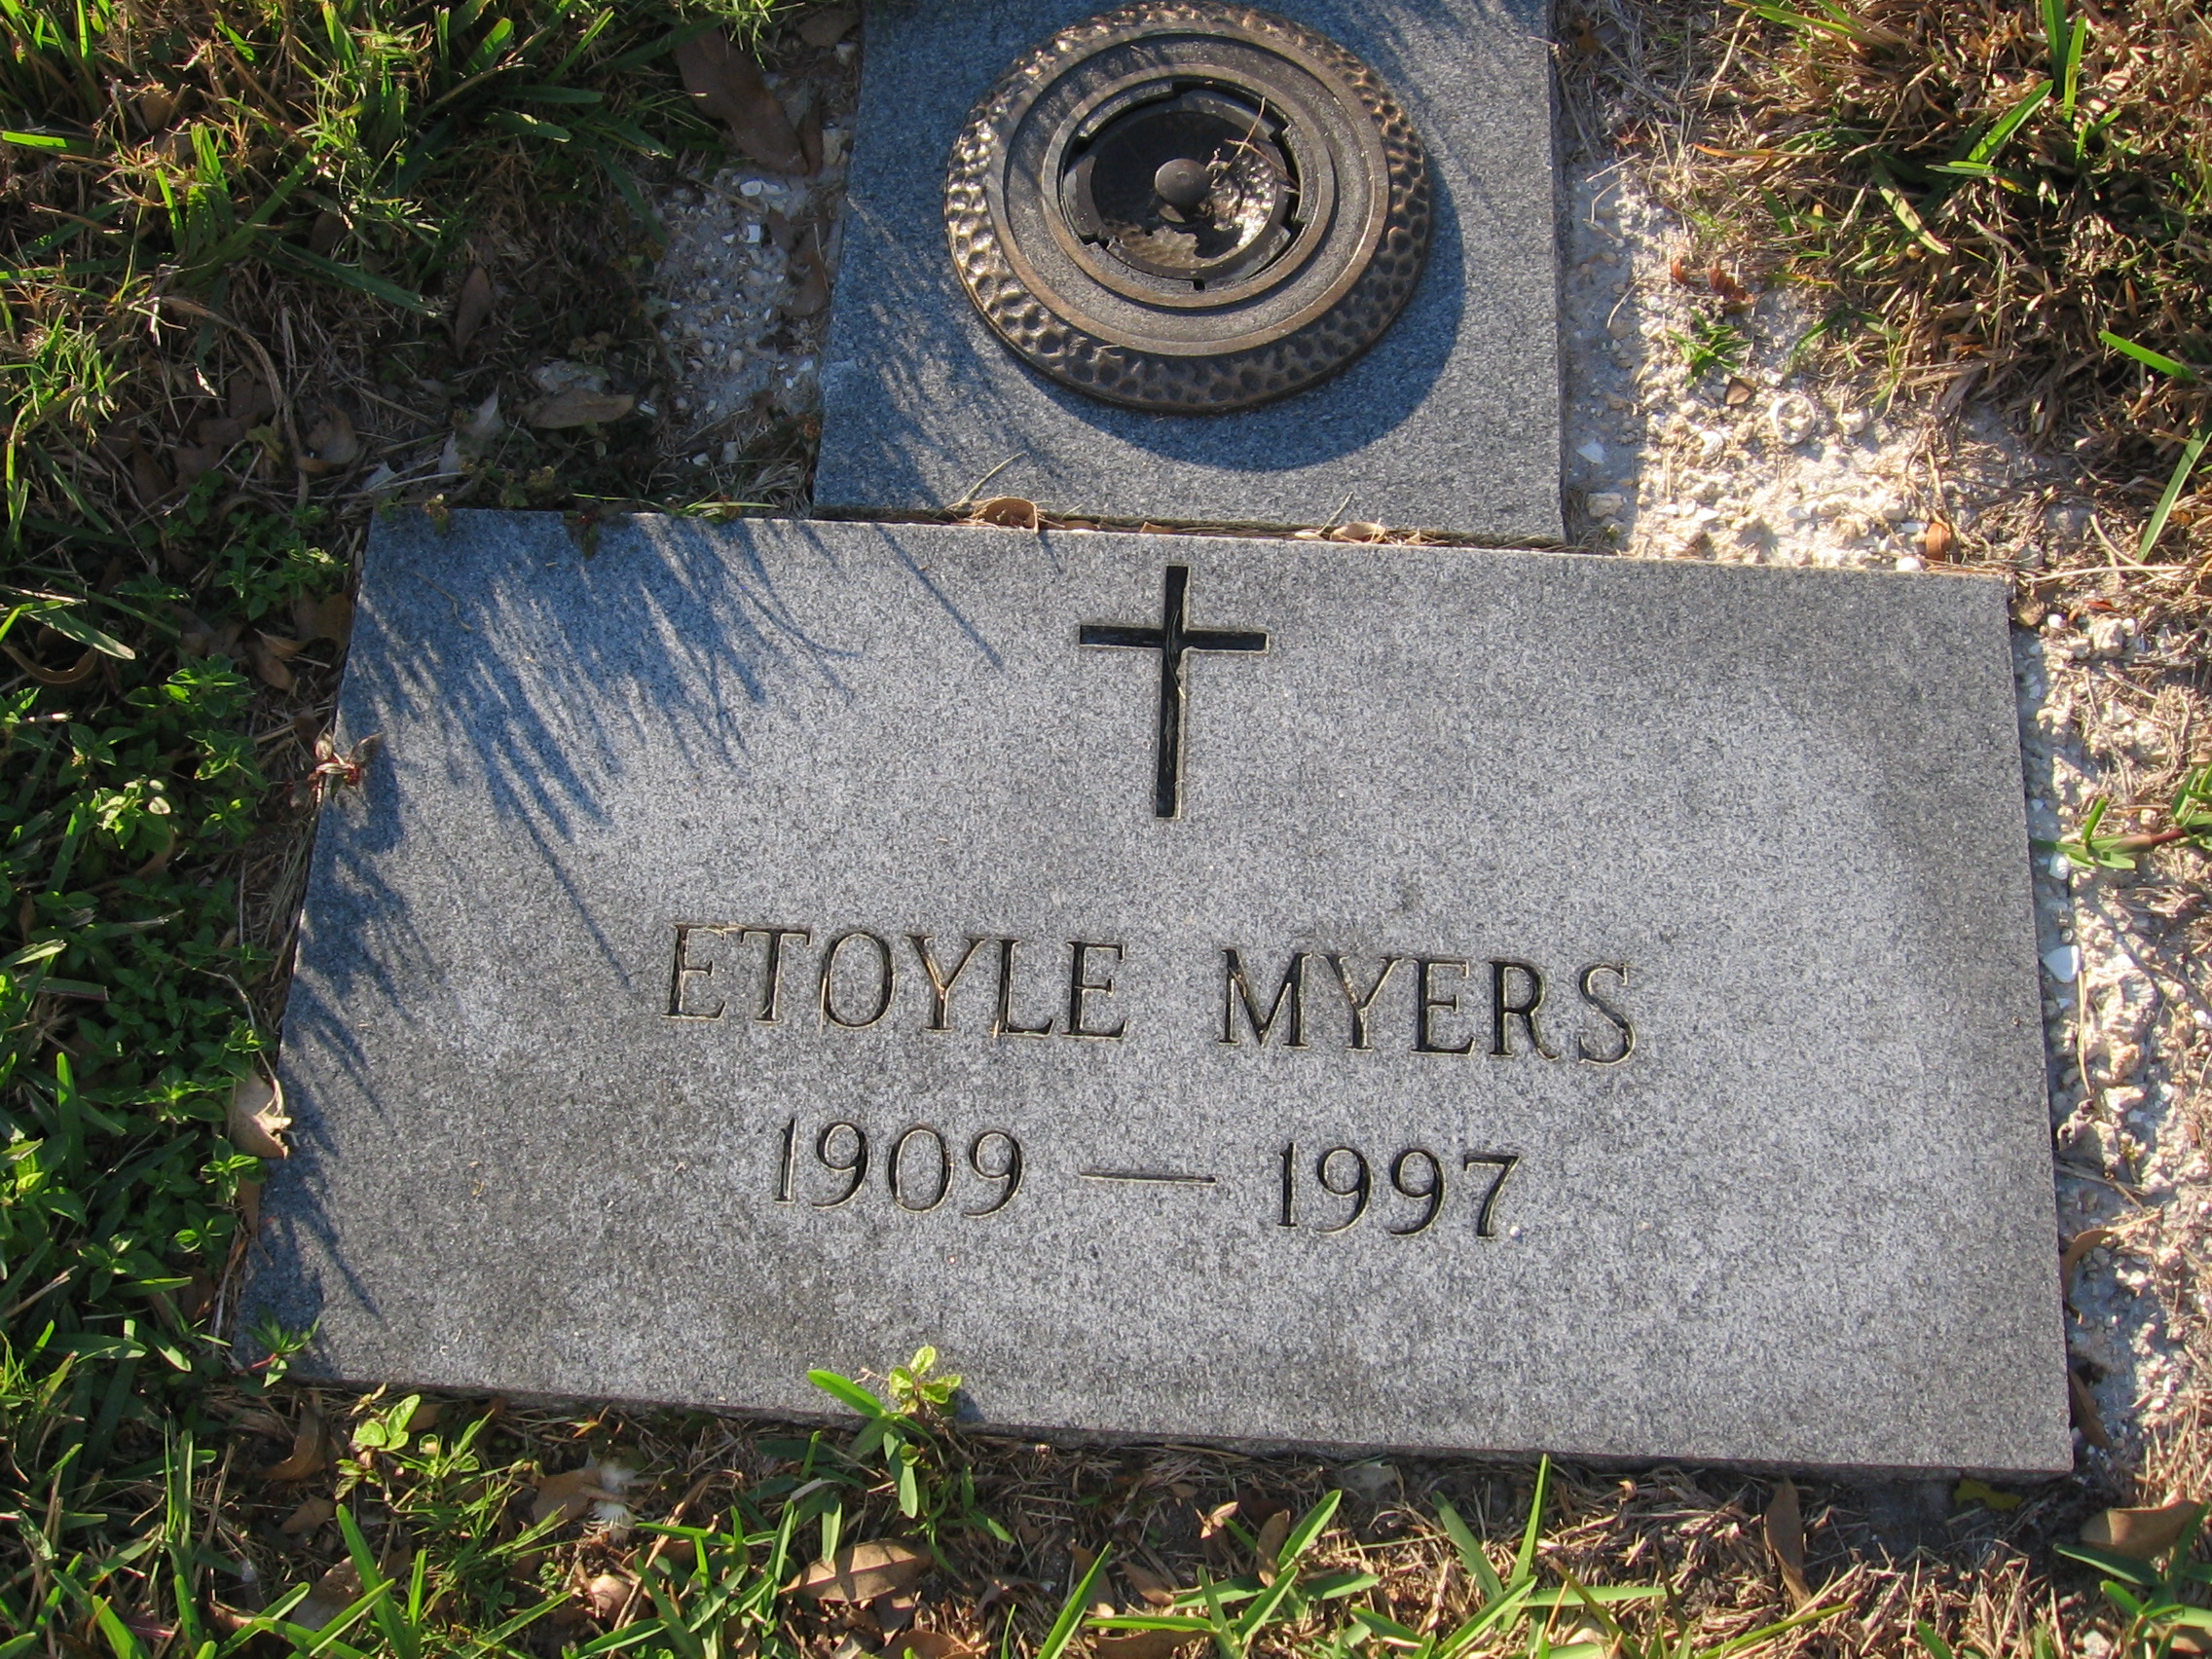 Etoyle Myers